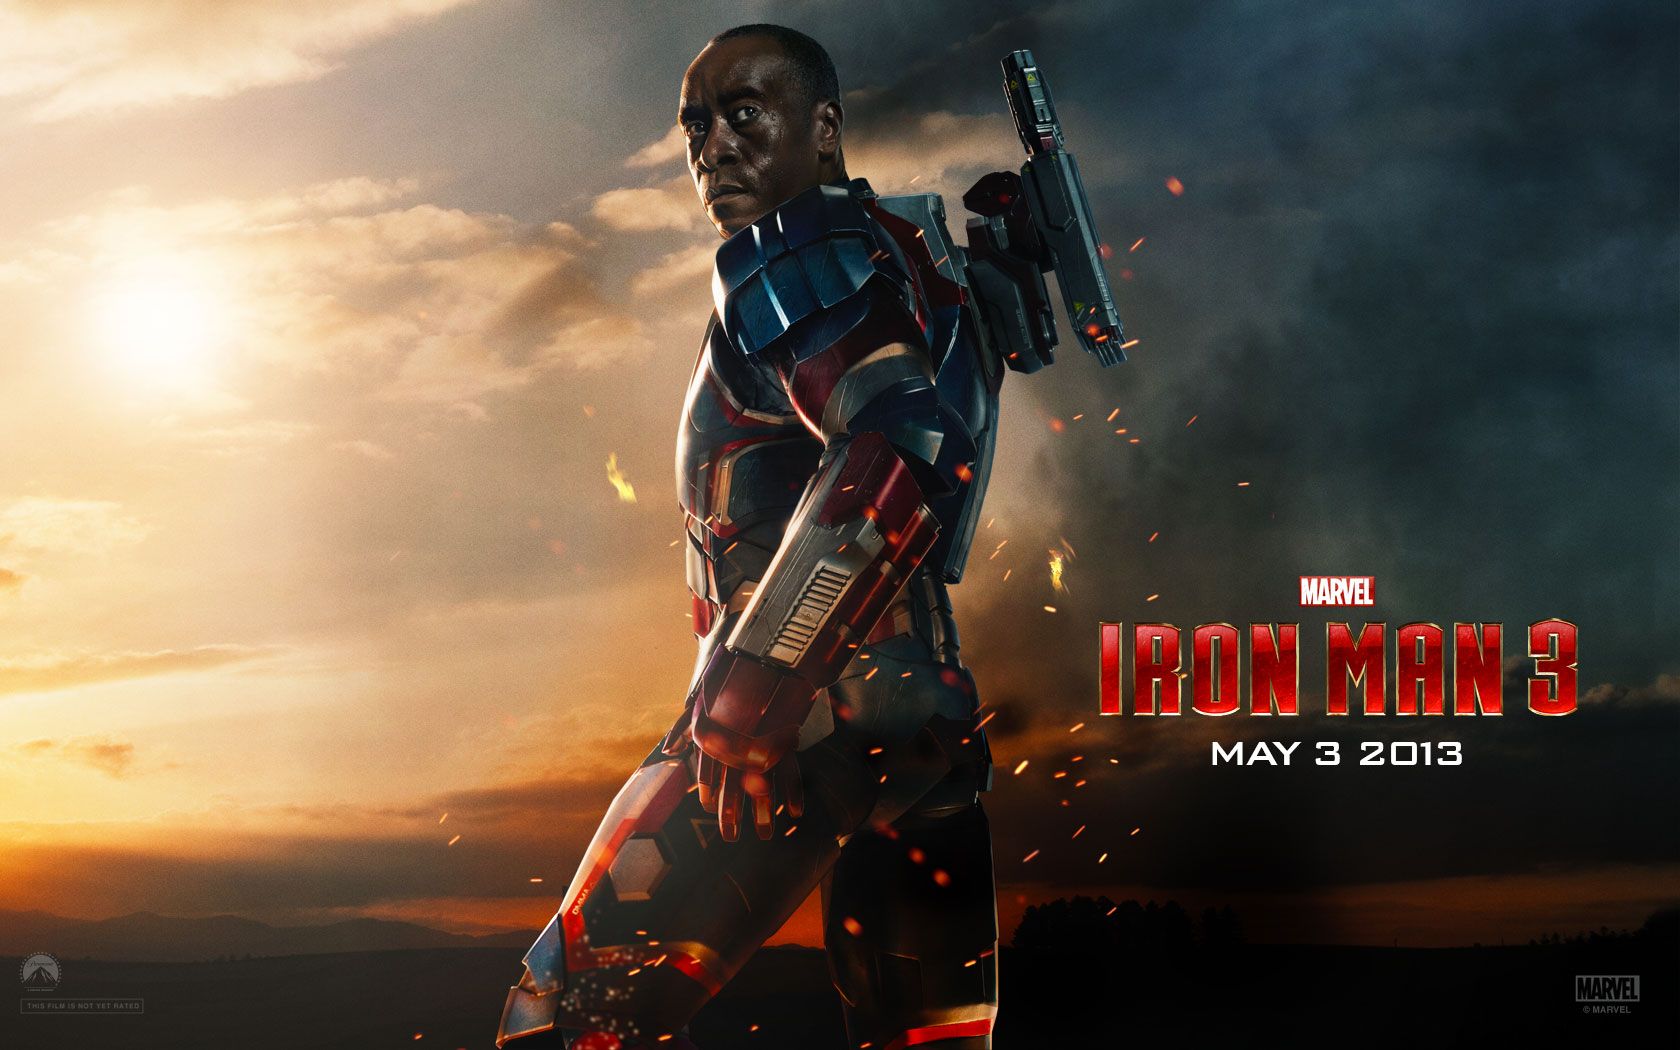 Iron Man 3 Suit wallpapers | Iron Man 3 Suit stock photos